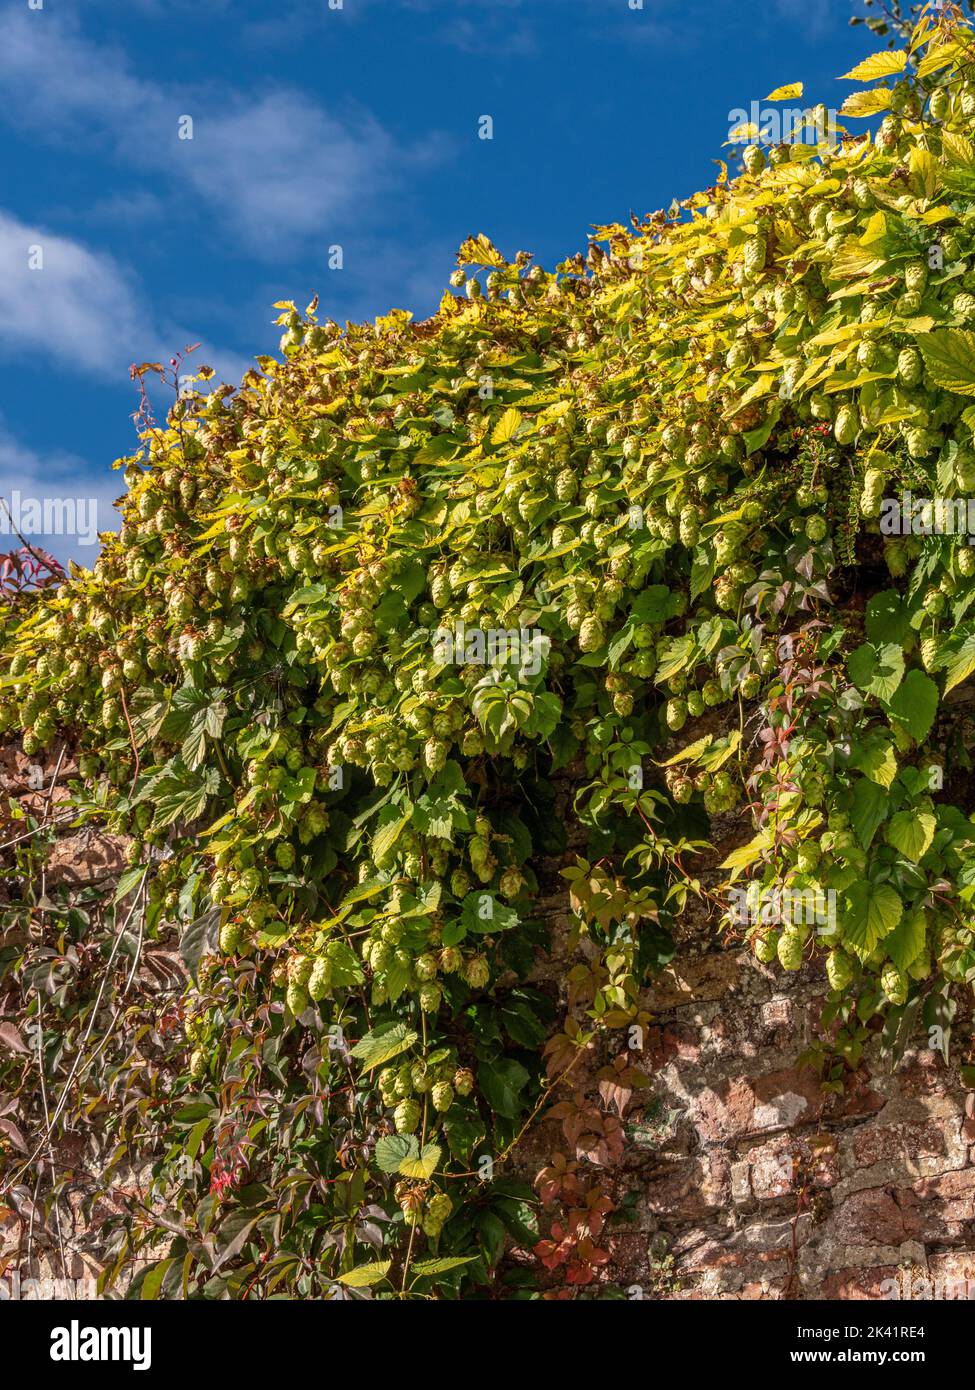 Hops growing over a garden wall in a UK garden. Stock Photo